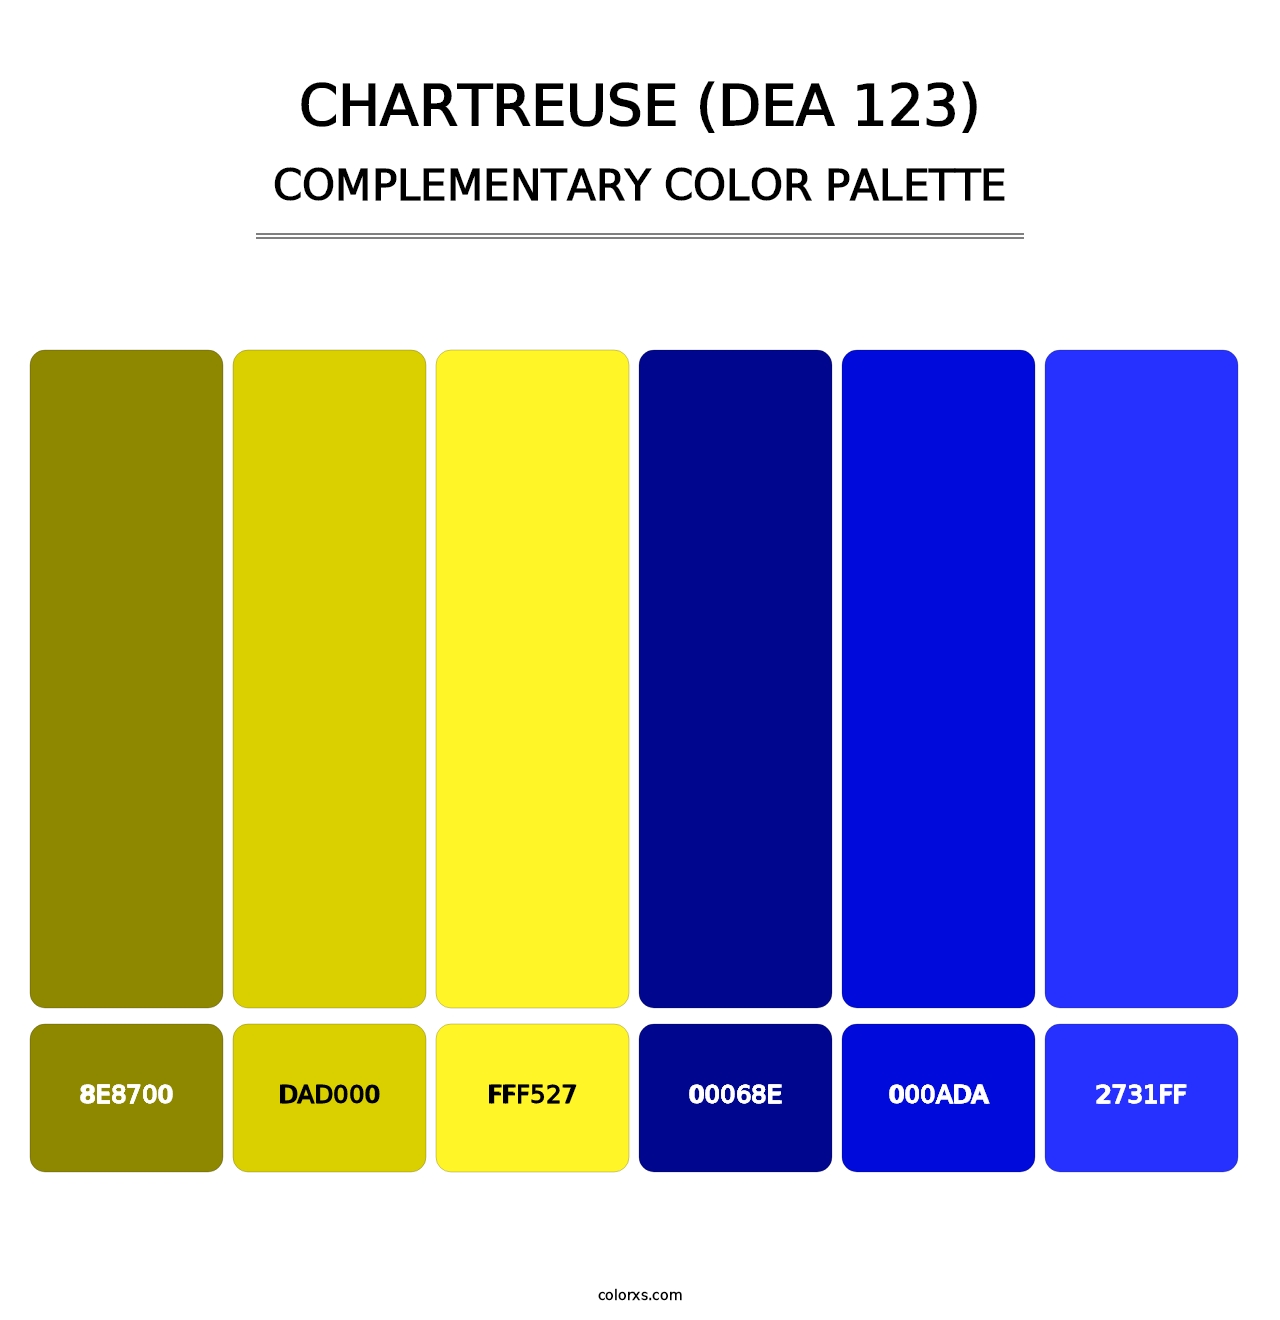 Chartreuse (DEA 123) - Complementary Color Palette